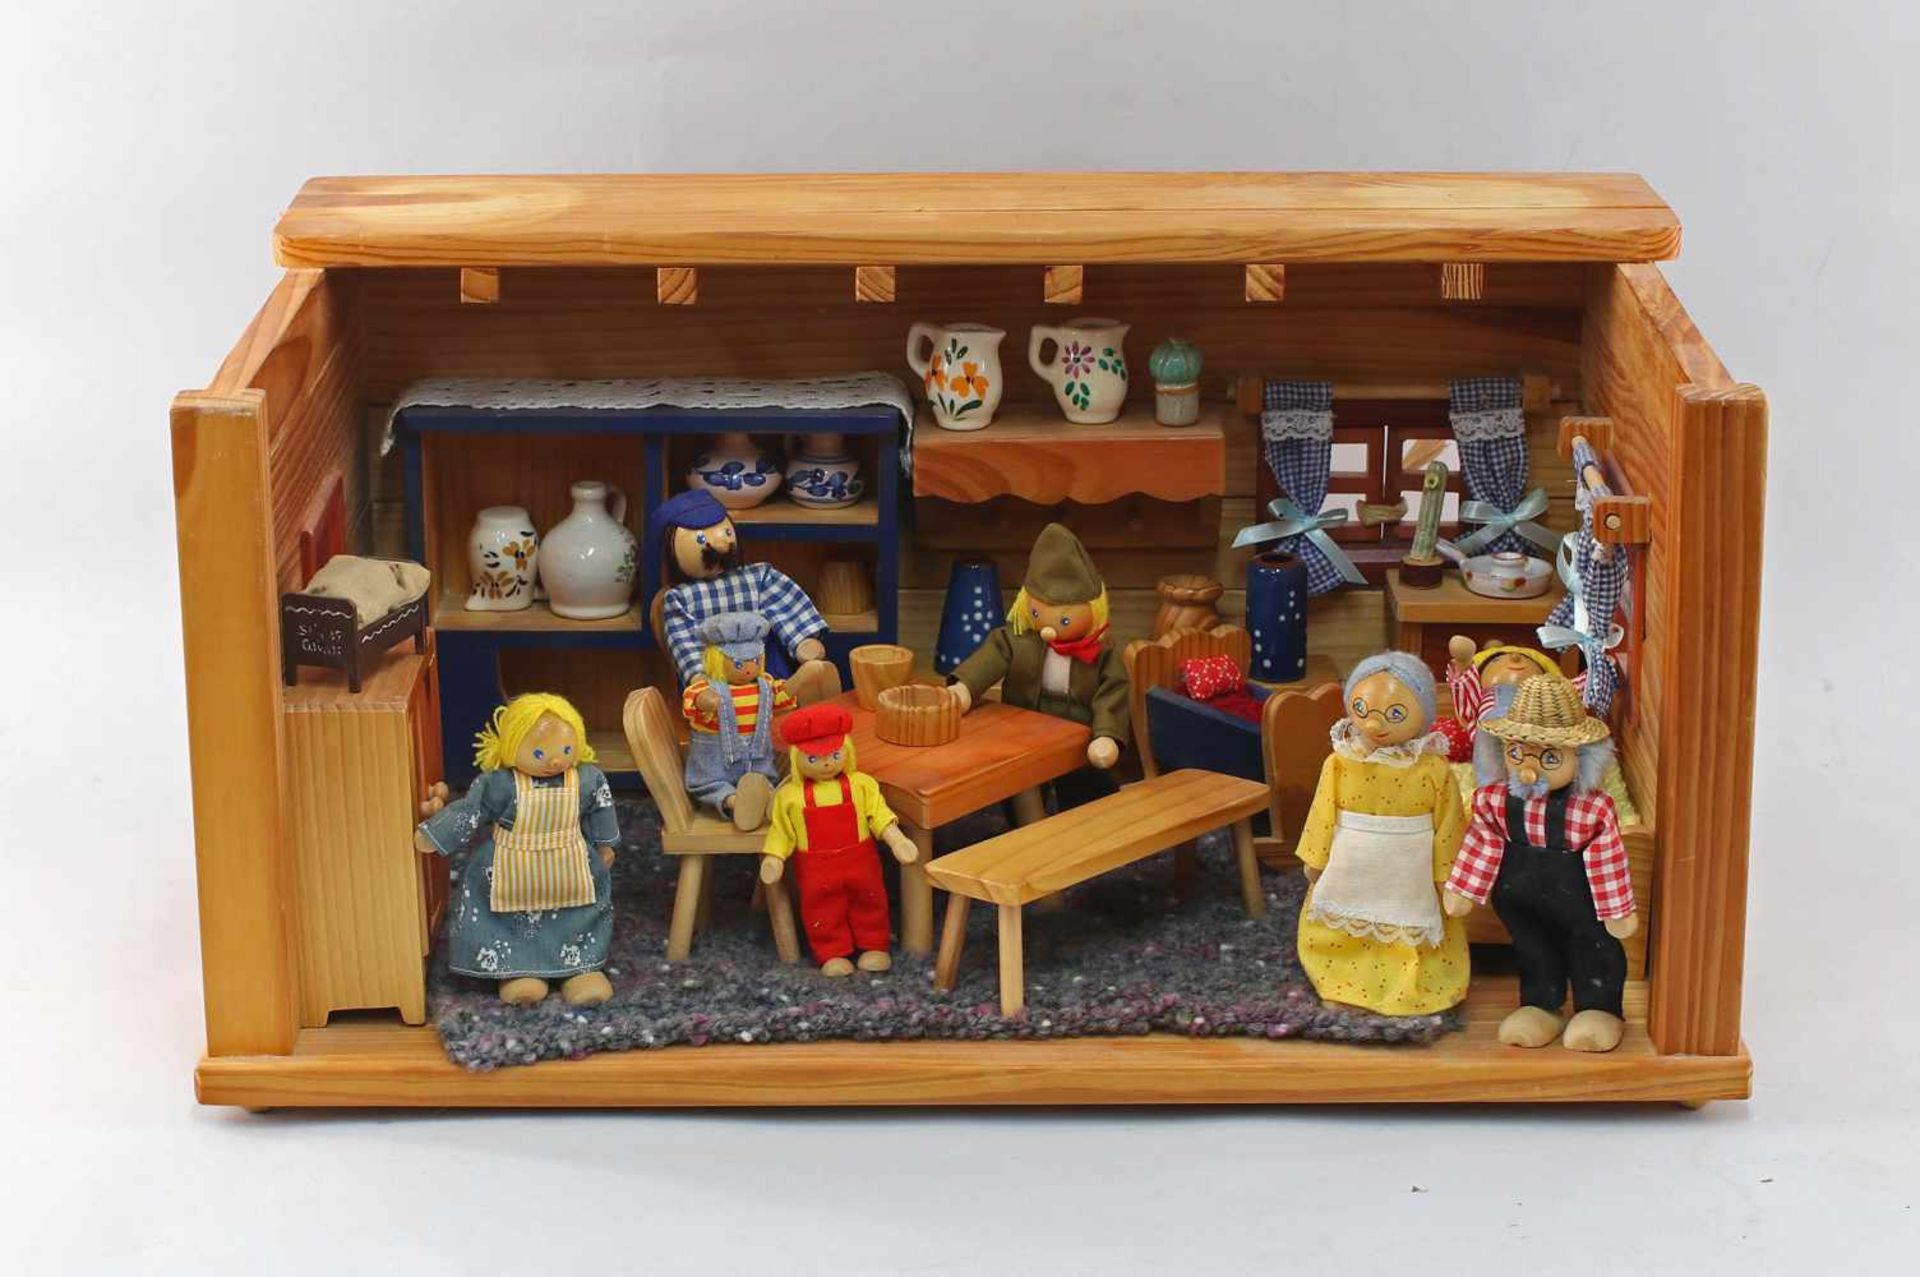 Puppenstubenicht alt, Holzgehäuse mit Tür und Fenster, Holzmöbel, bäuerliches Zubehör, dazu